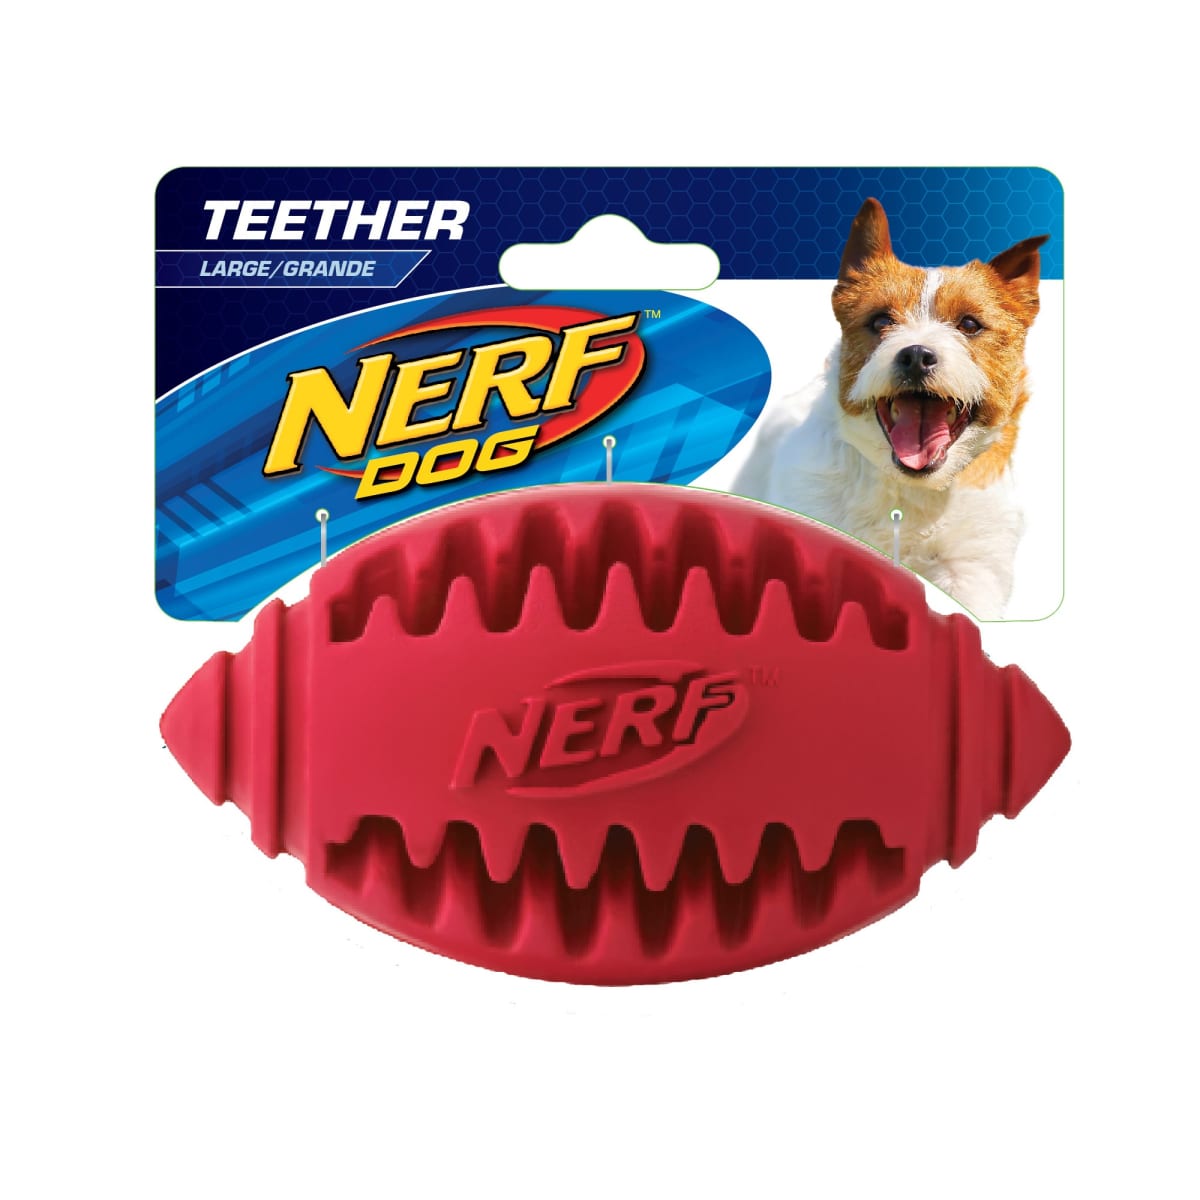 Nerf Dog เนิร์ฟ ด็อก ลูกบอลขัดฟัน สำหรับสุนัข สีแดง ไซส์ L_1